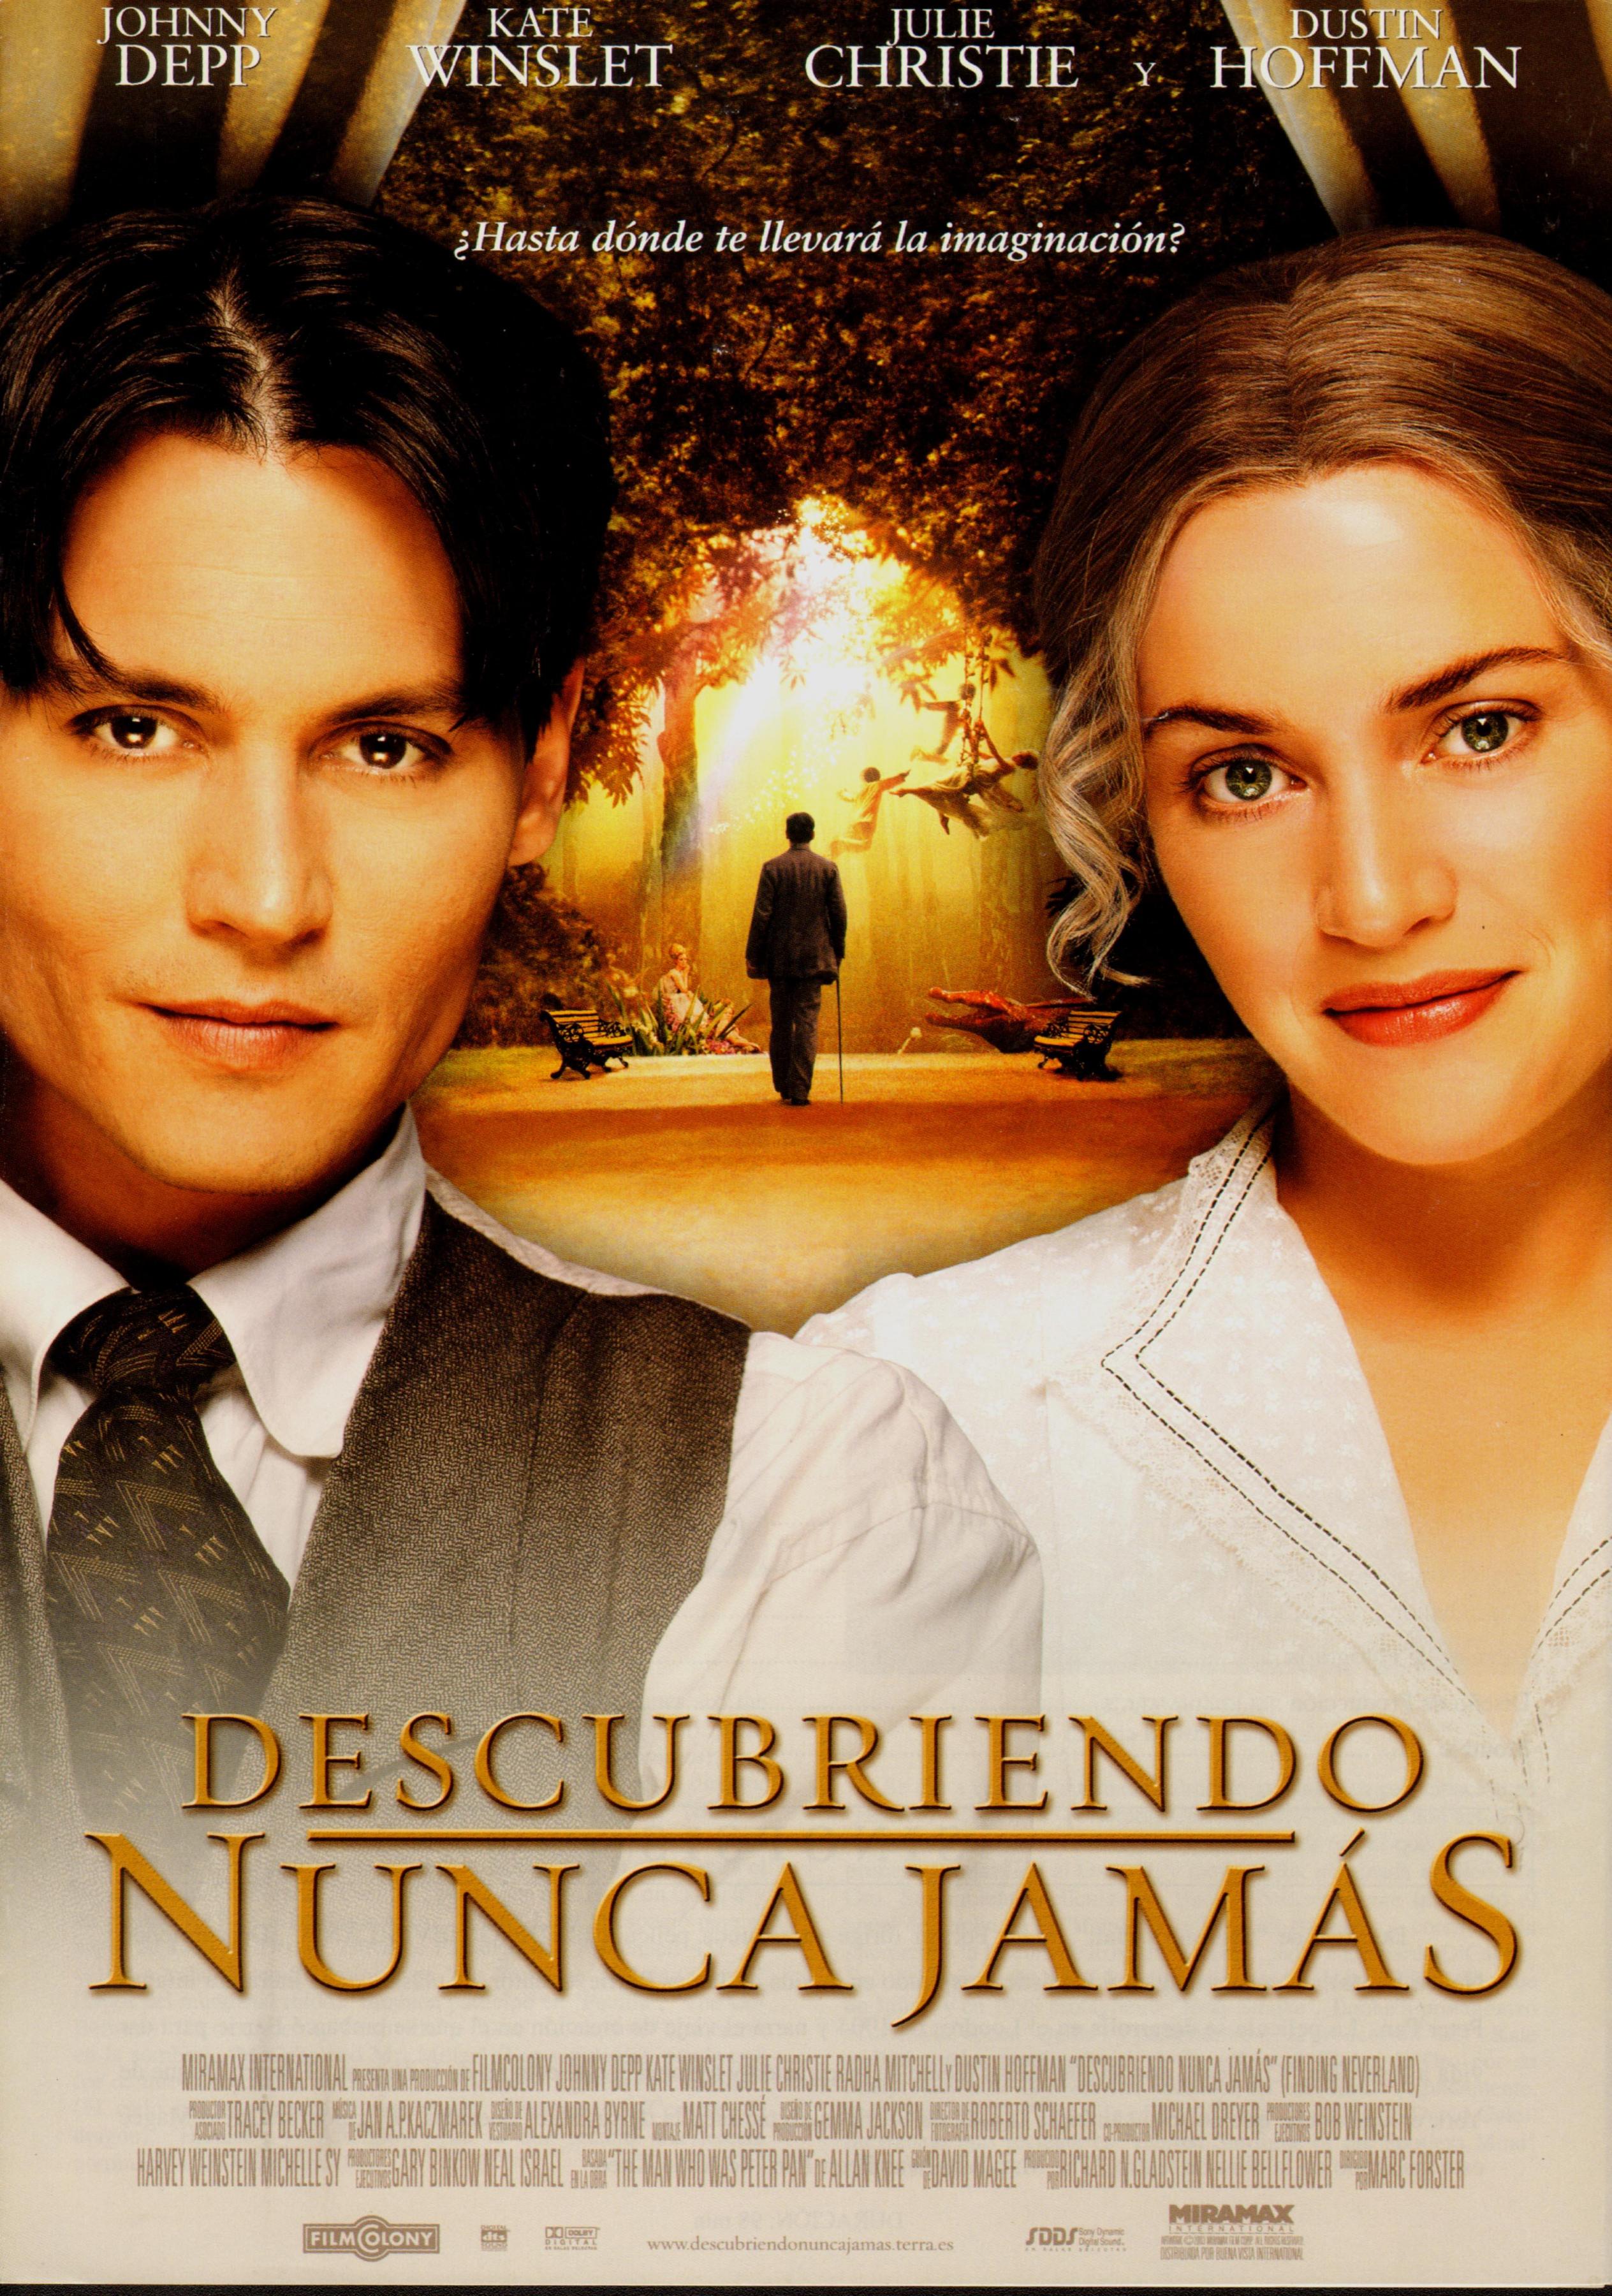 Постер фильма Волшебная страна | Finding Neverland